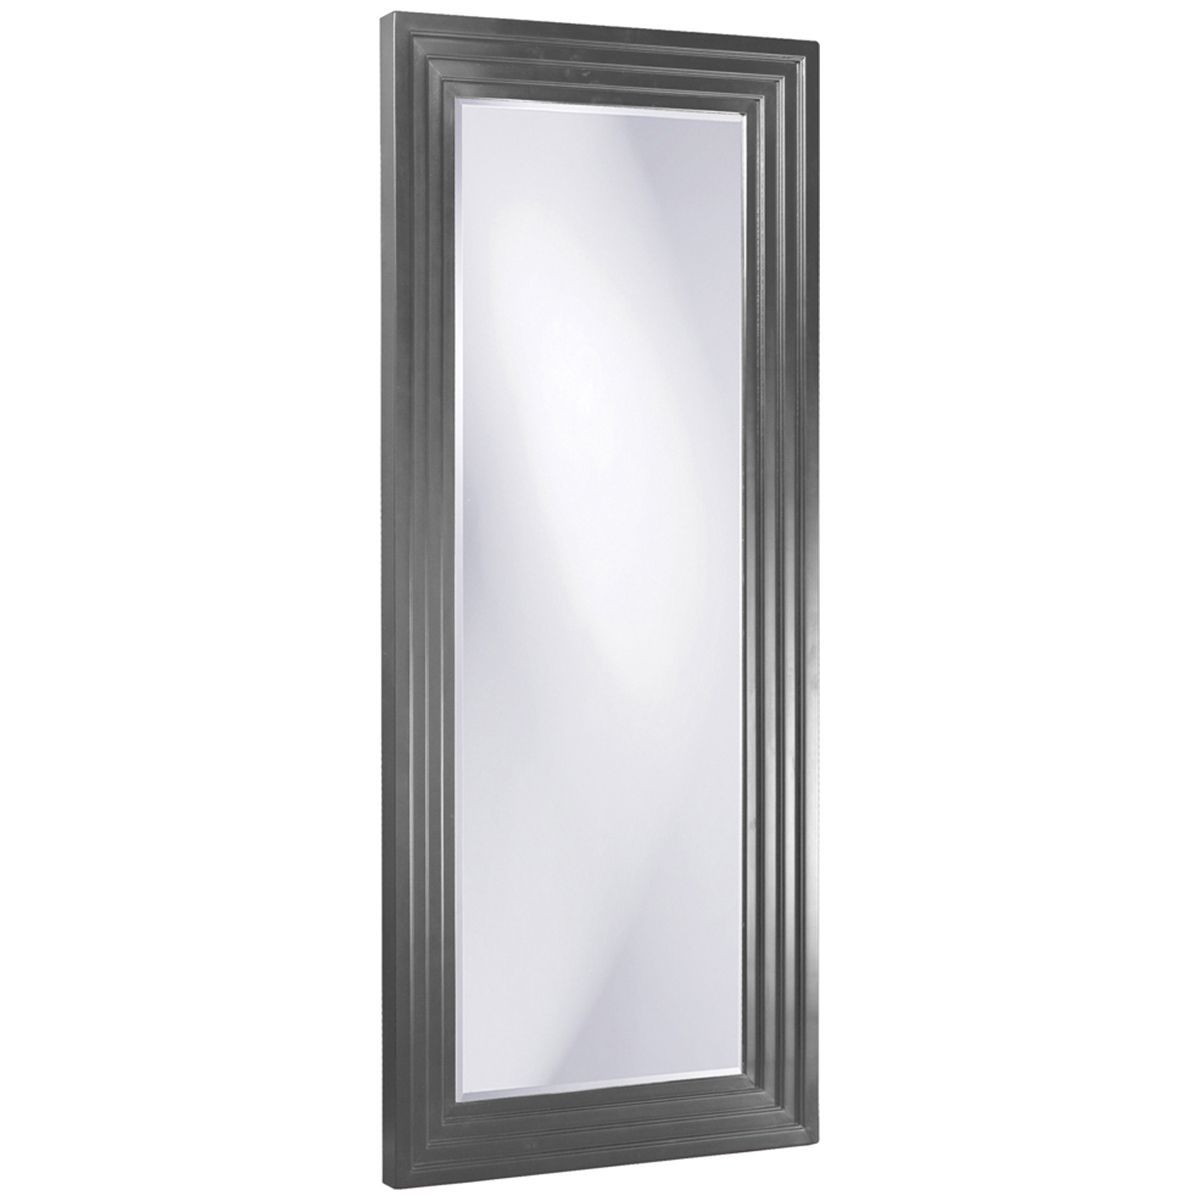 Howard Elliott Delano Charcoal Gray Tall Mirror 43057Ch | Mirror Decor Within Charcoal Gray Wall Mirrors (View 14 of 15)